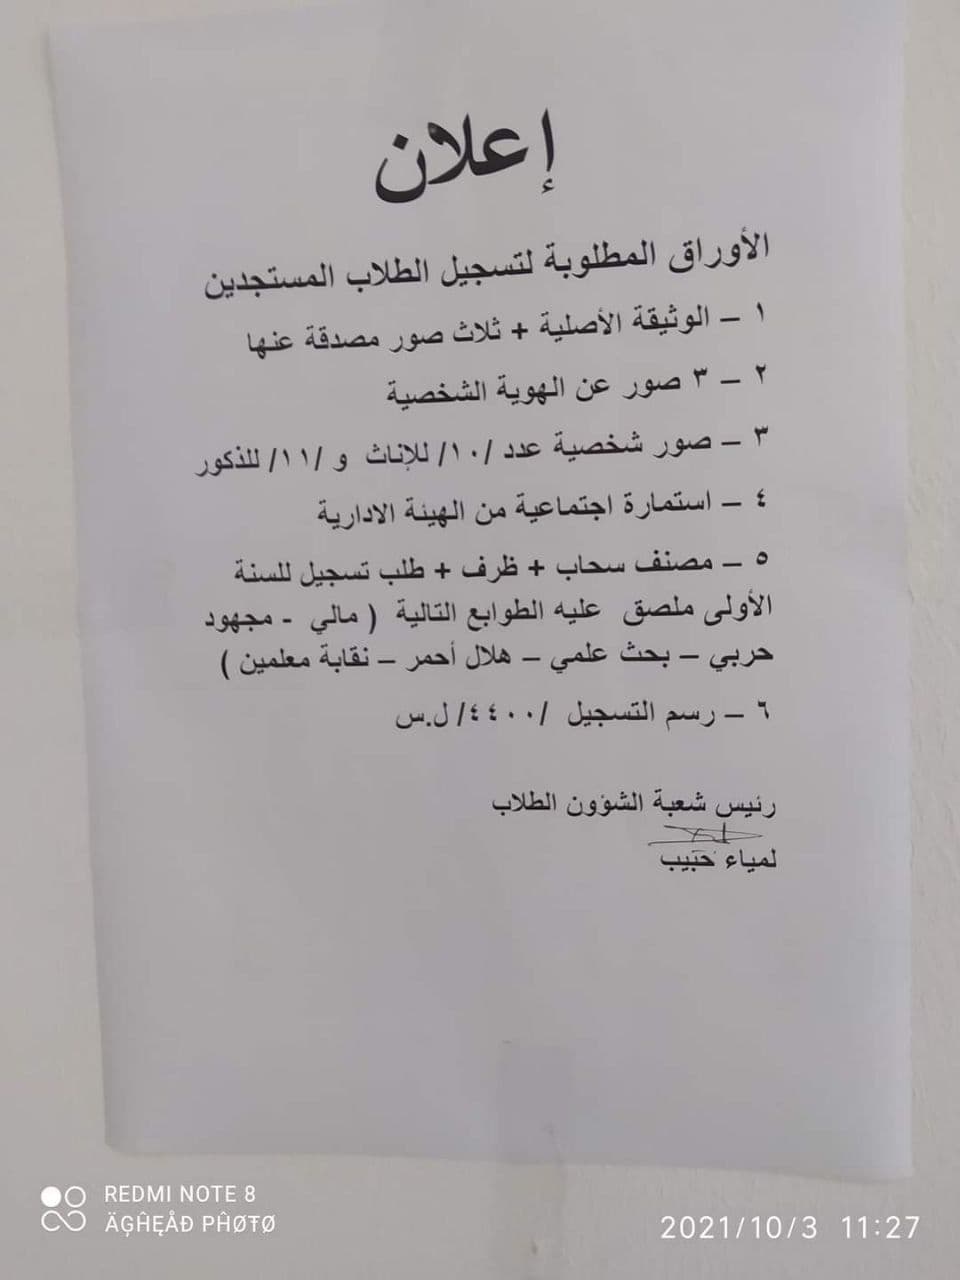 الأوراق المطلوبة للتسجيل بمعاهد و كليات الجامعات السورية الحكومية - التسجيل بالجامعة 